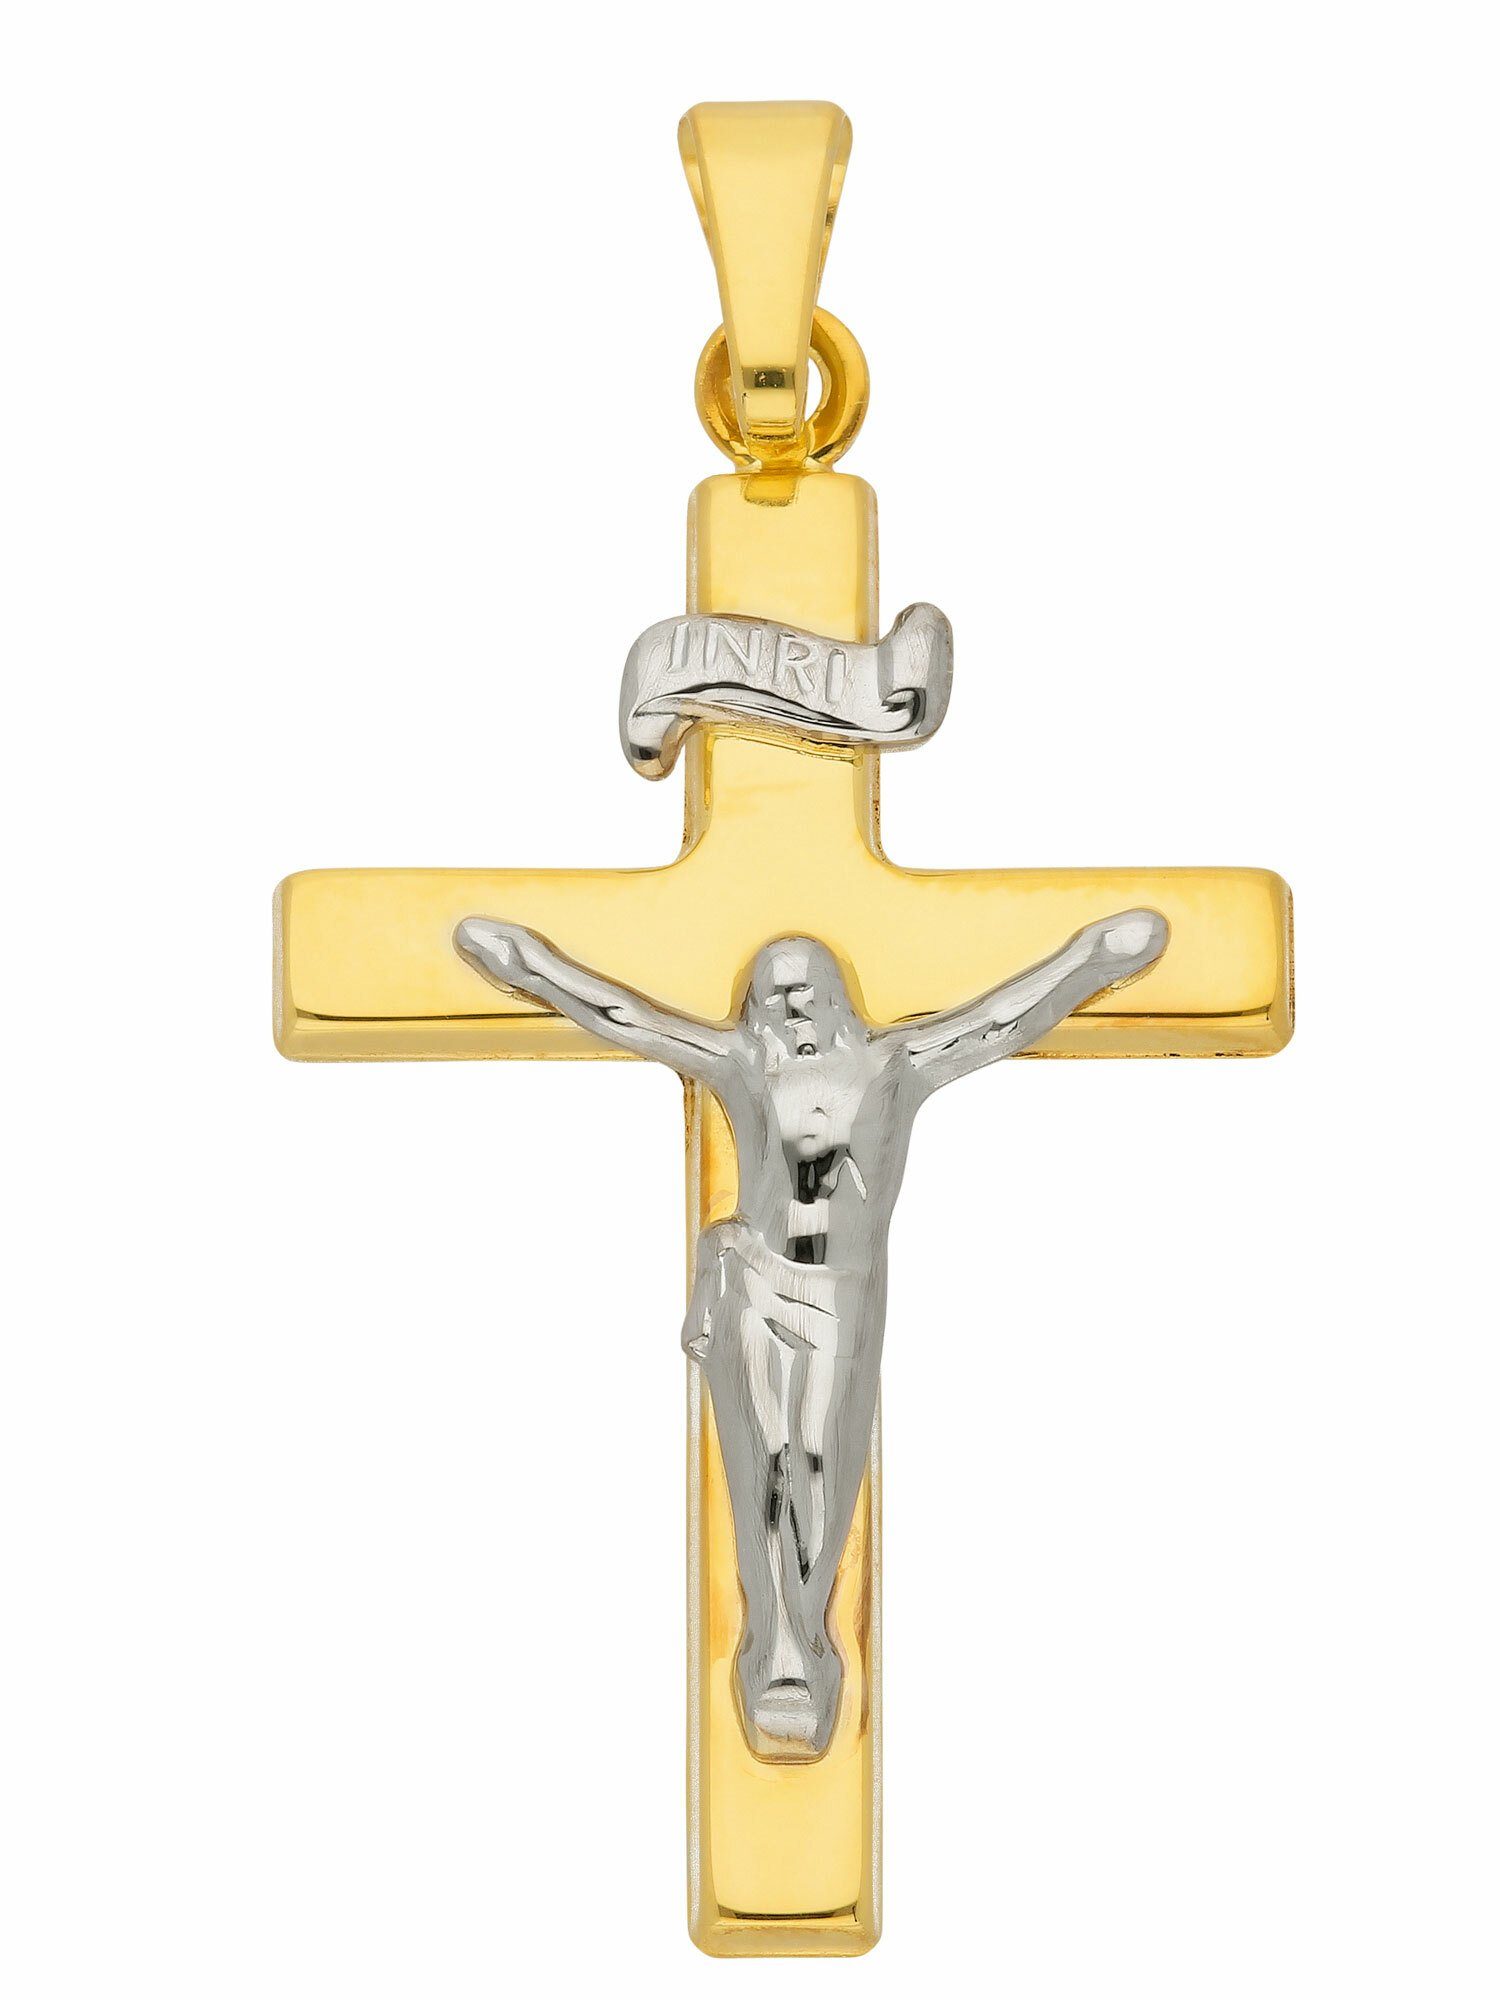 Hobra-Gold Kleines Goldkreuz 585 glattes Kreuz Anhänger Gold 14 Kt Goldanhänger vier Größen 